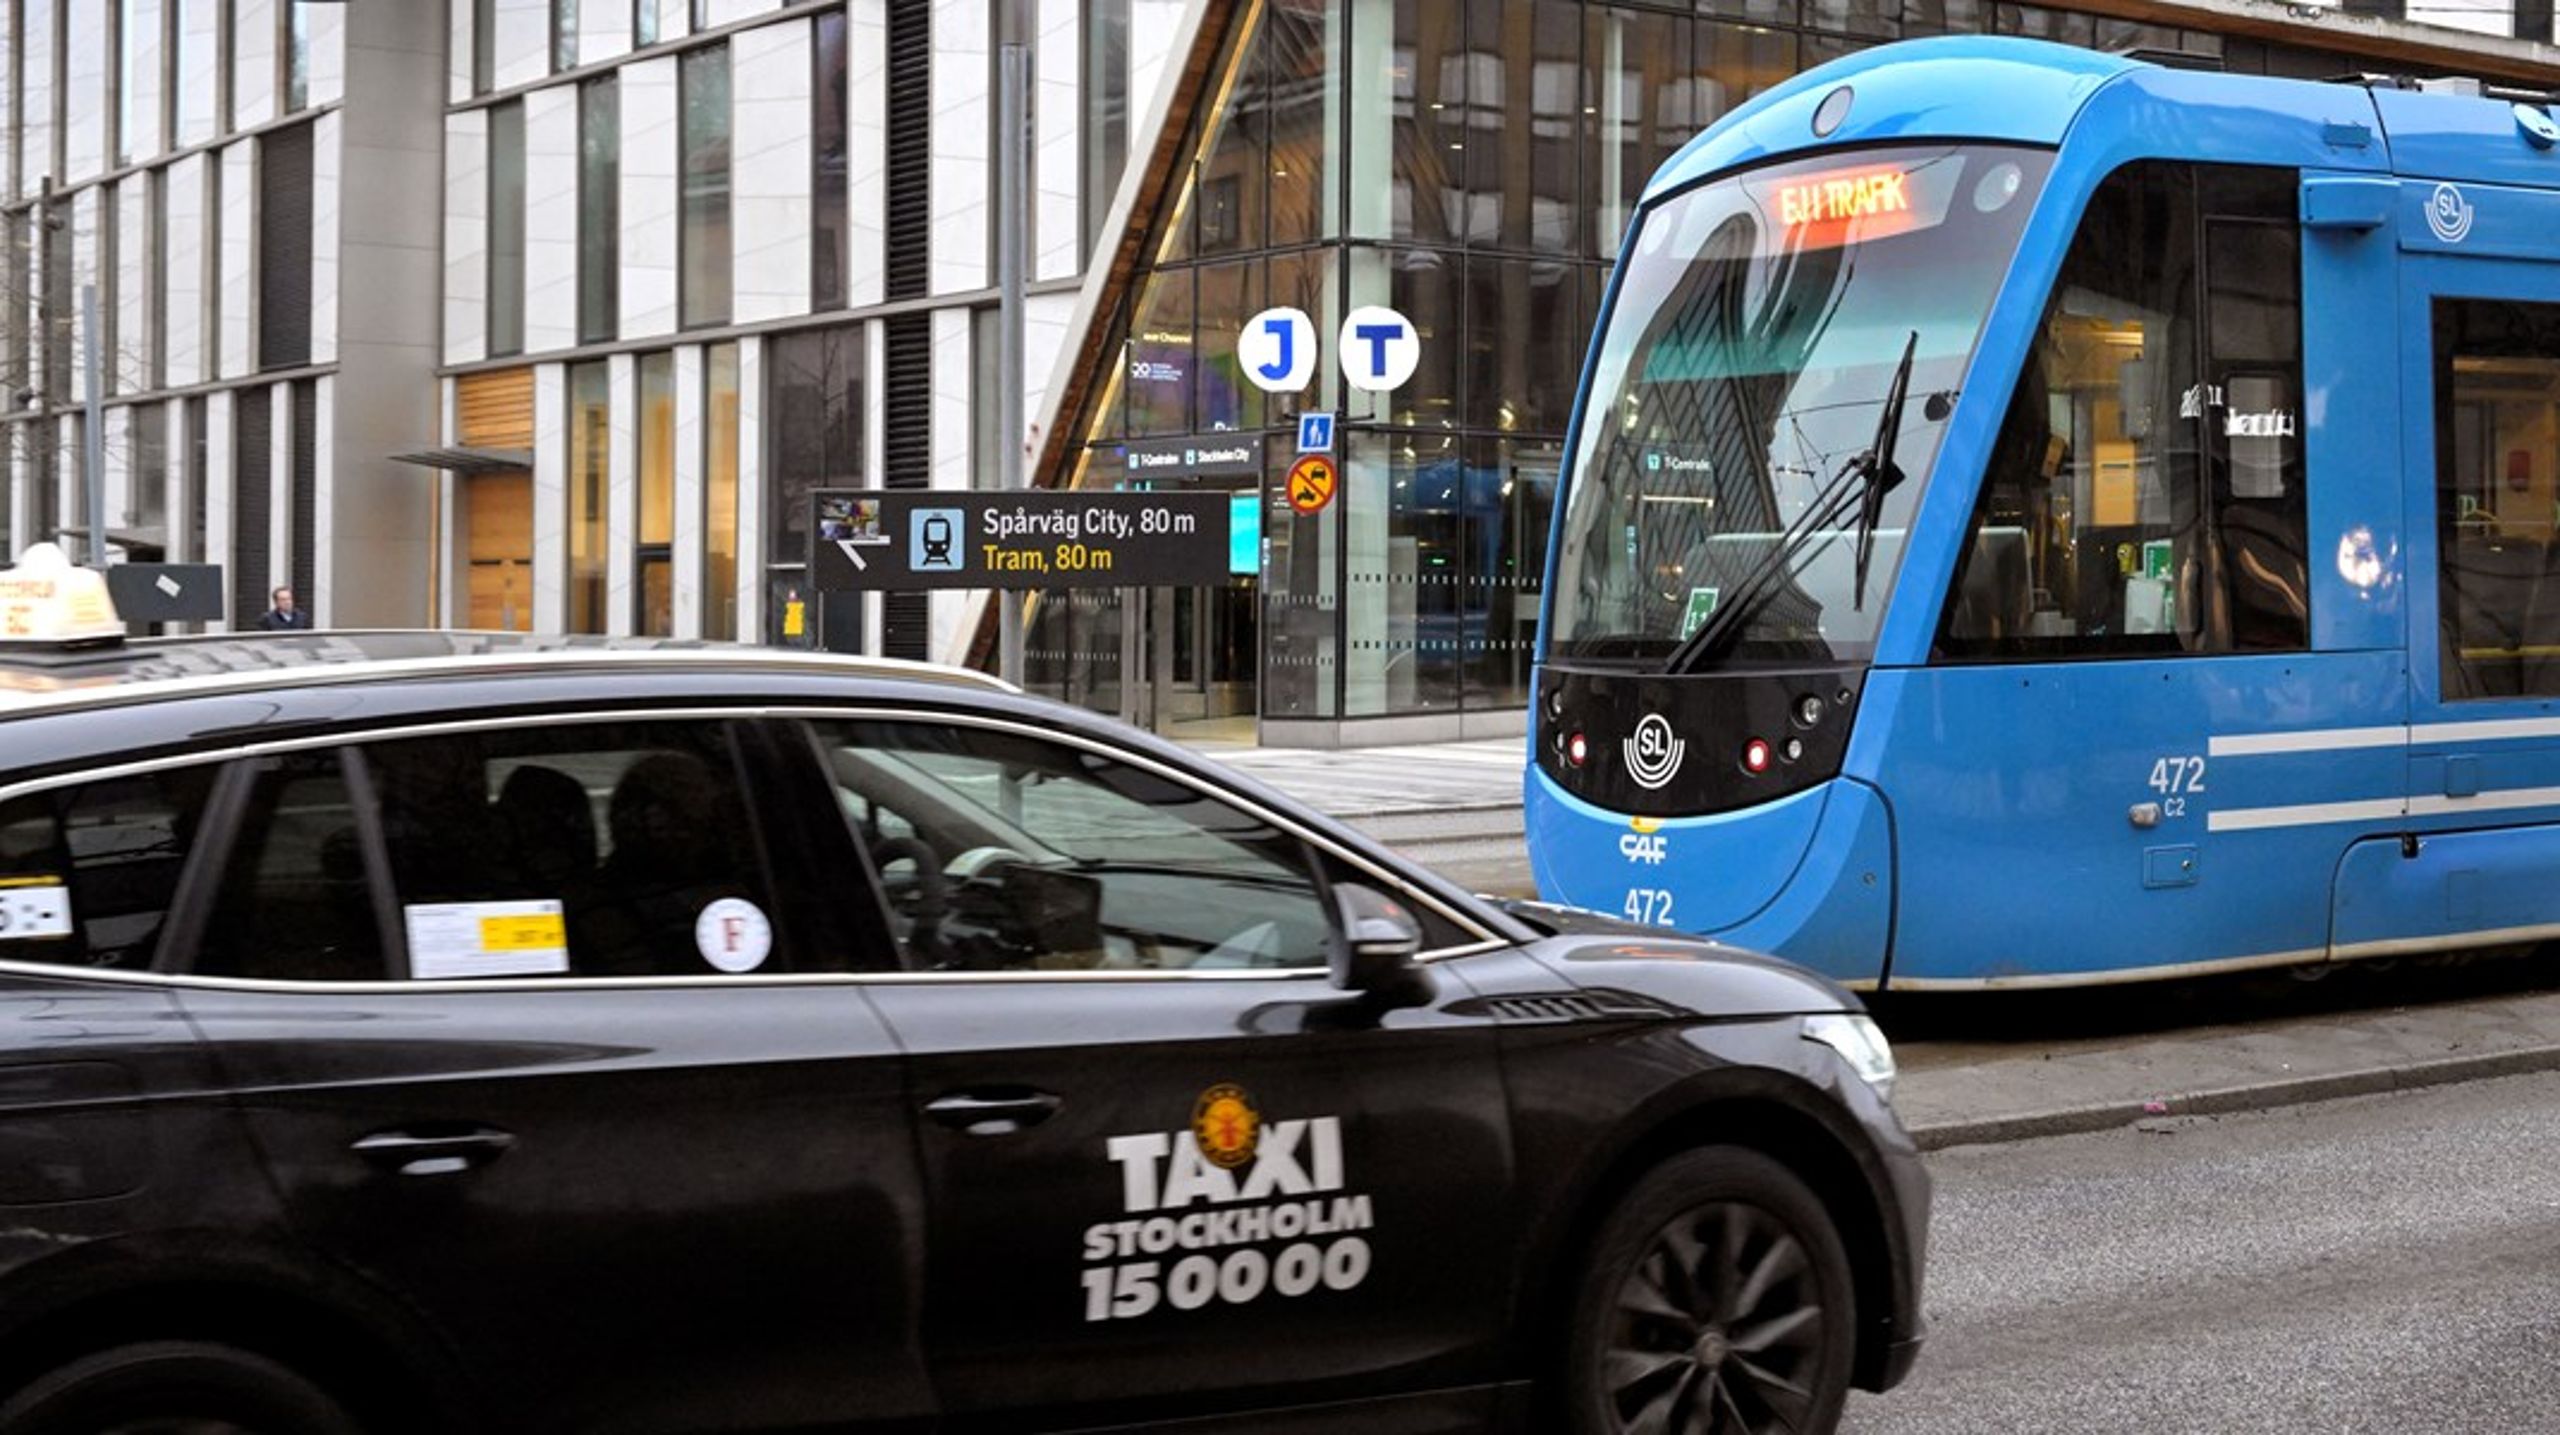 I Stockholmsregionen är Taxi Stockholm en stor arbetsgivare som erbjuder sina anställda schysta arbetsvillkor och kollektivavtal. De skapar många arbetstillfällen och fungerar som ett exempel på hur taxibranschen kan drivas på ett ansvarsfullt sätt. Dock utmanas de av oseriösa företag, skriver debattörerna.